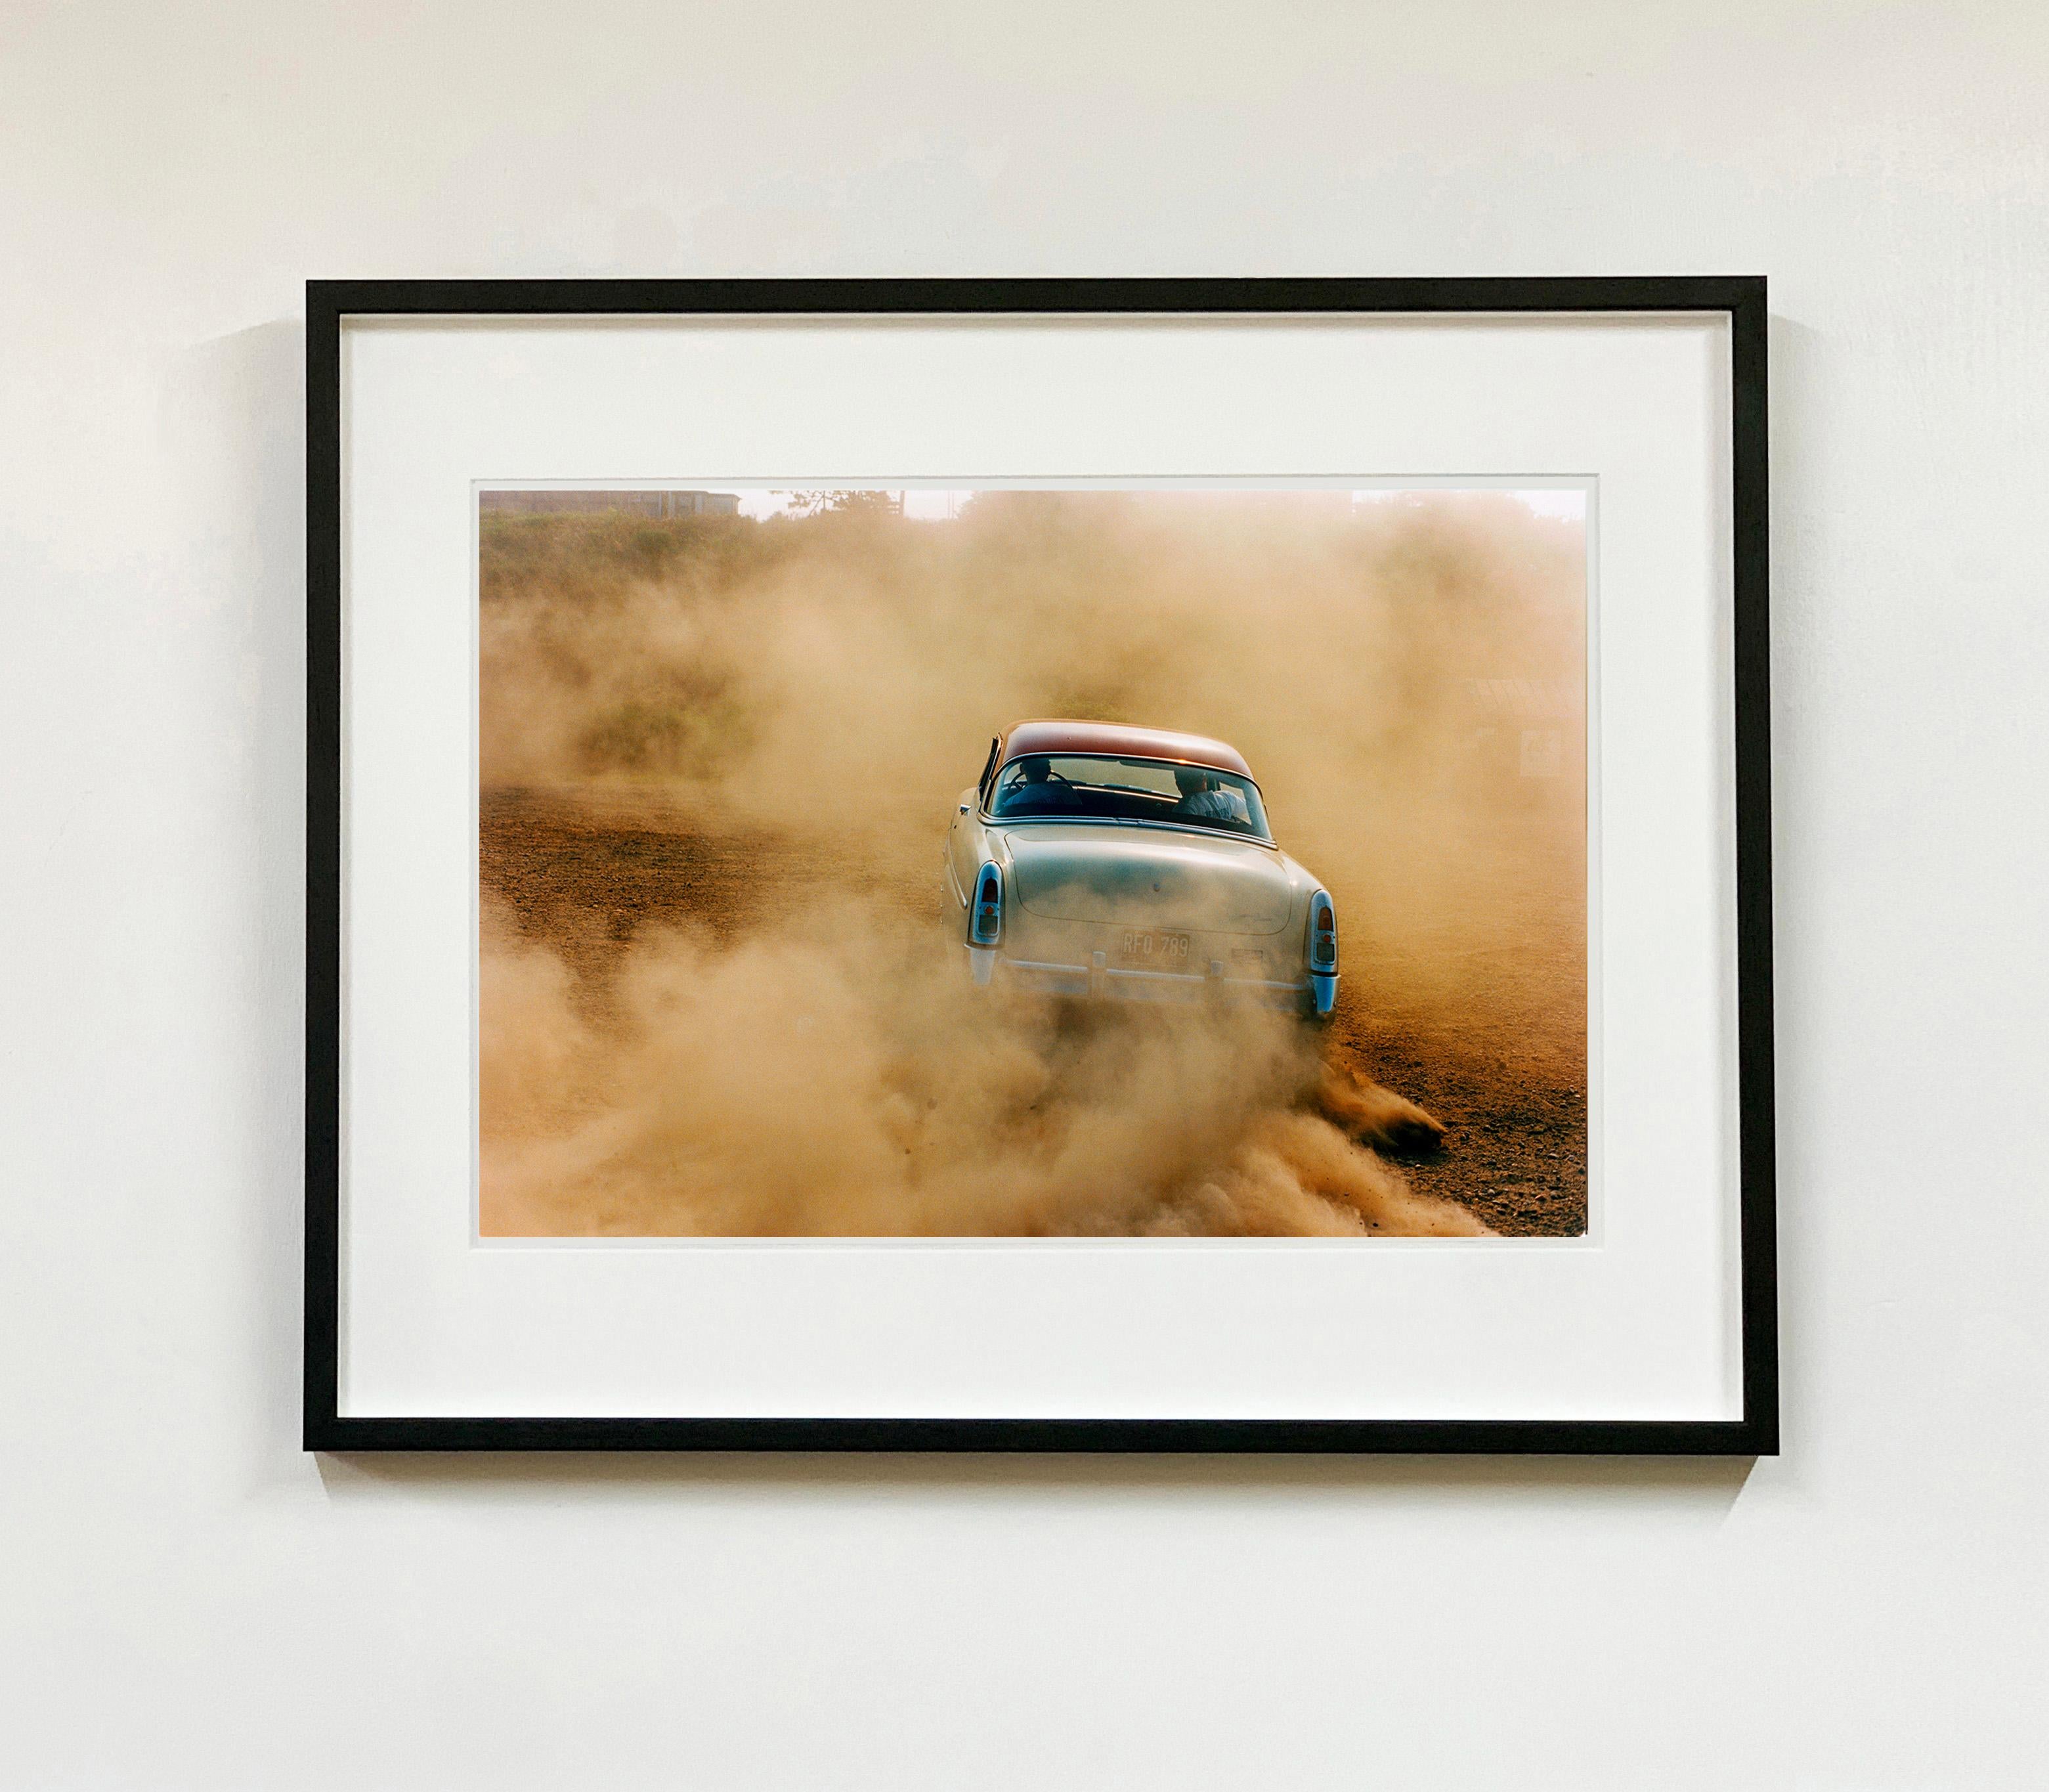 Mercury in the Dust, Hemsby, Norfolk – Auto auf einem Strand, Farbfotografie – Photograph von Richard Heeps